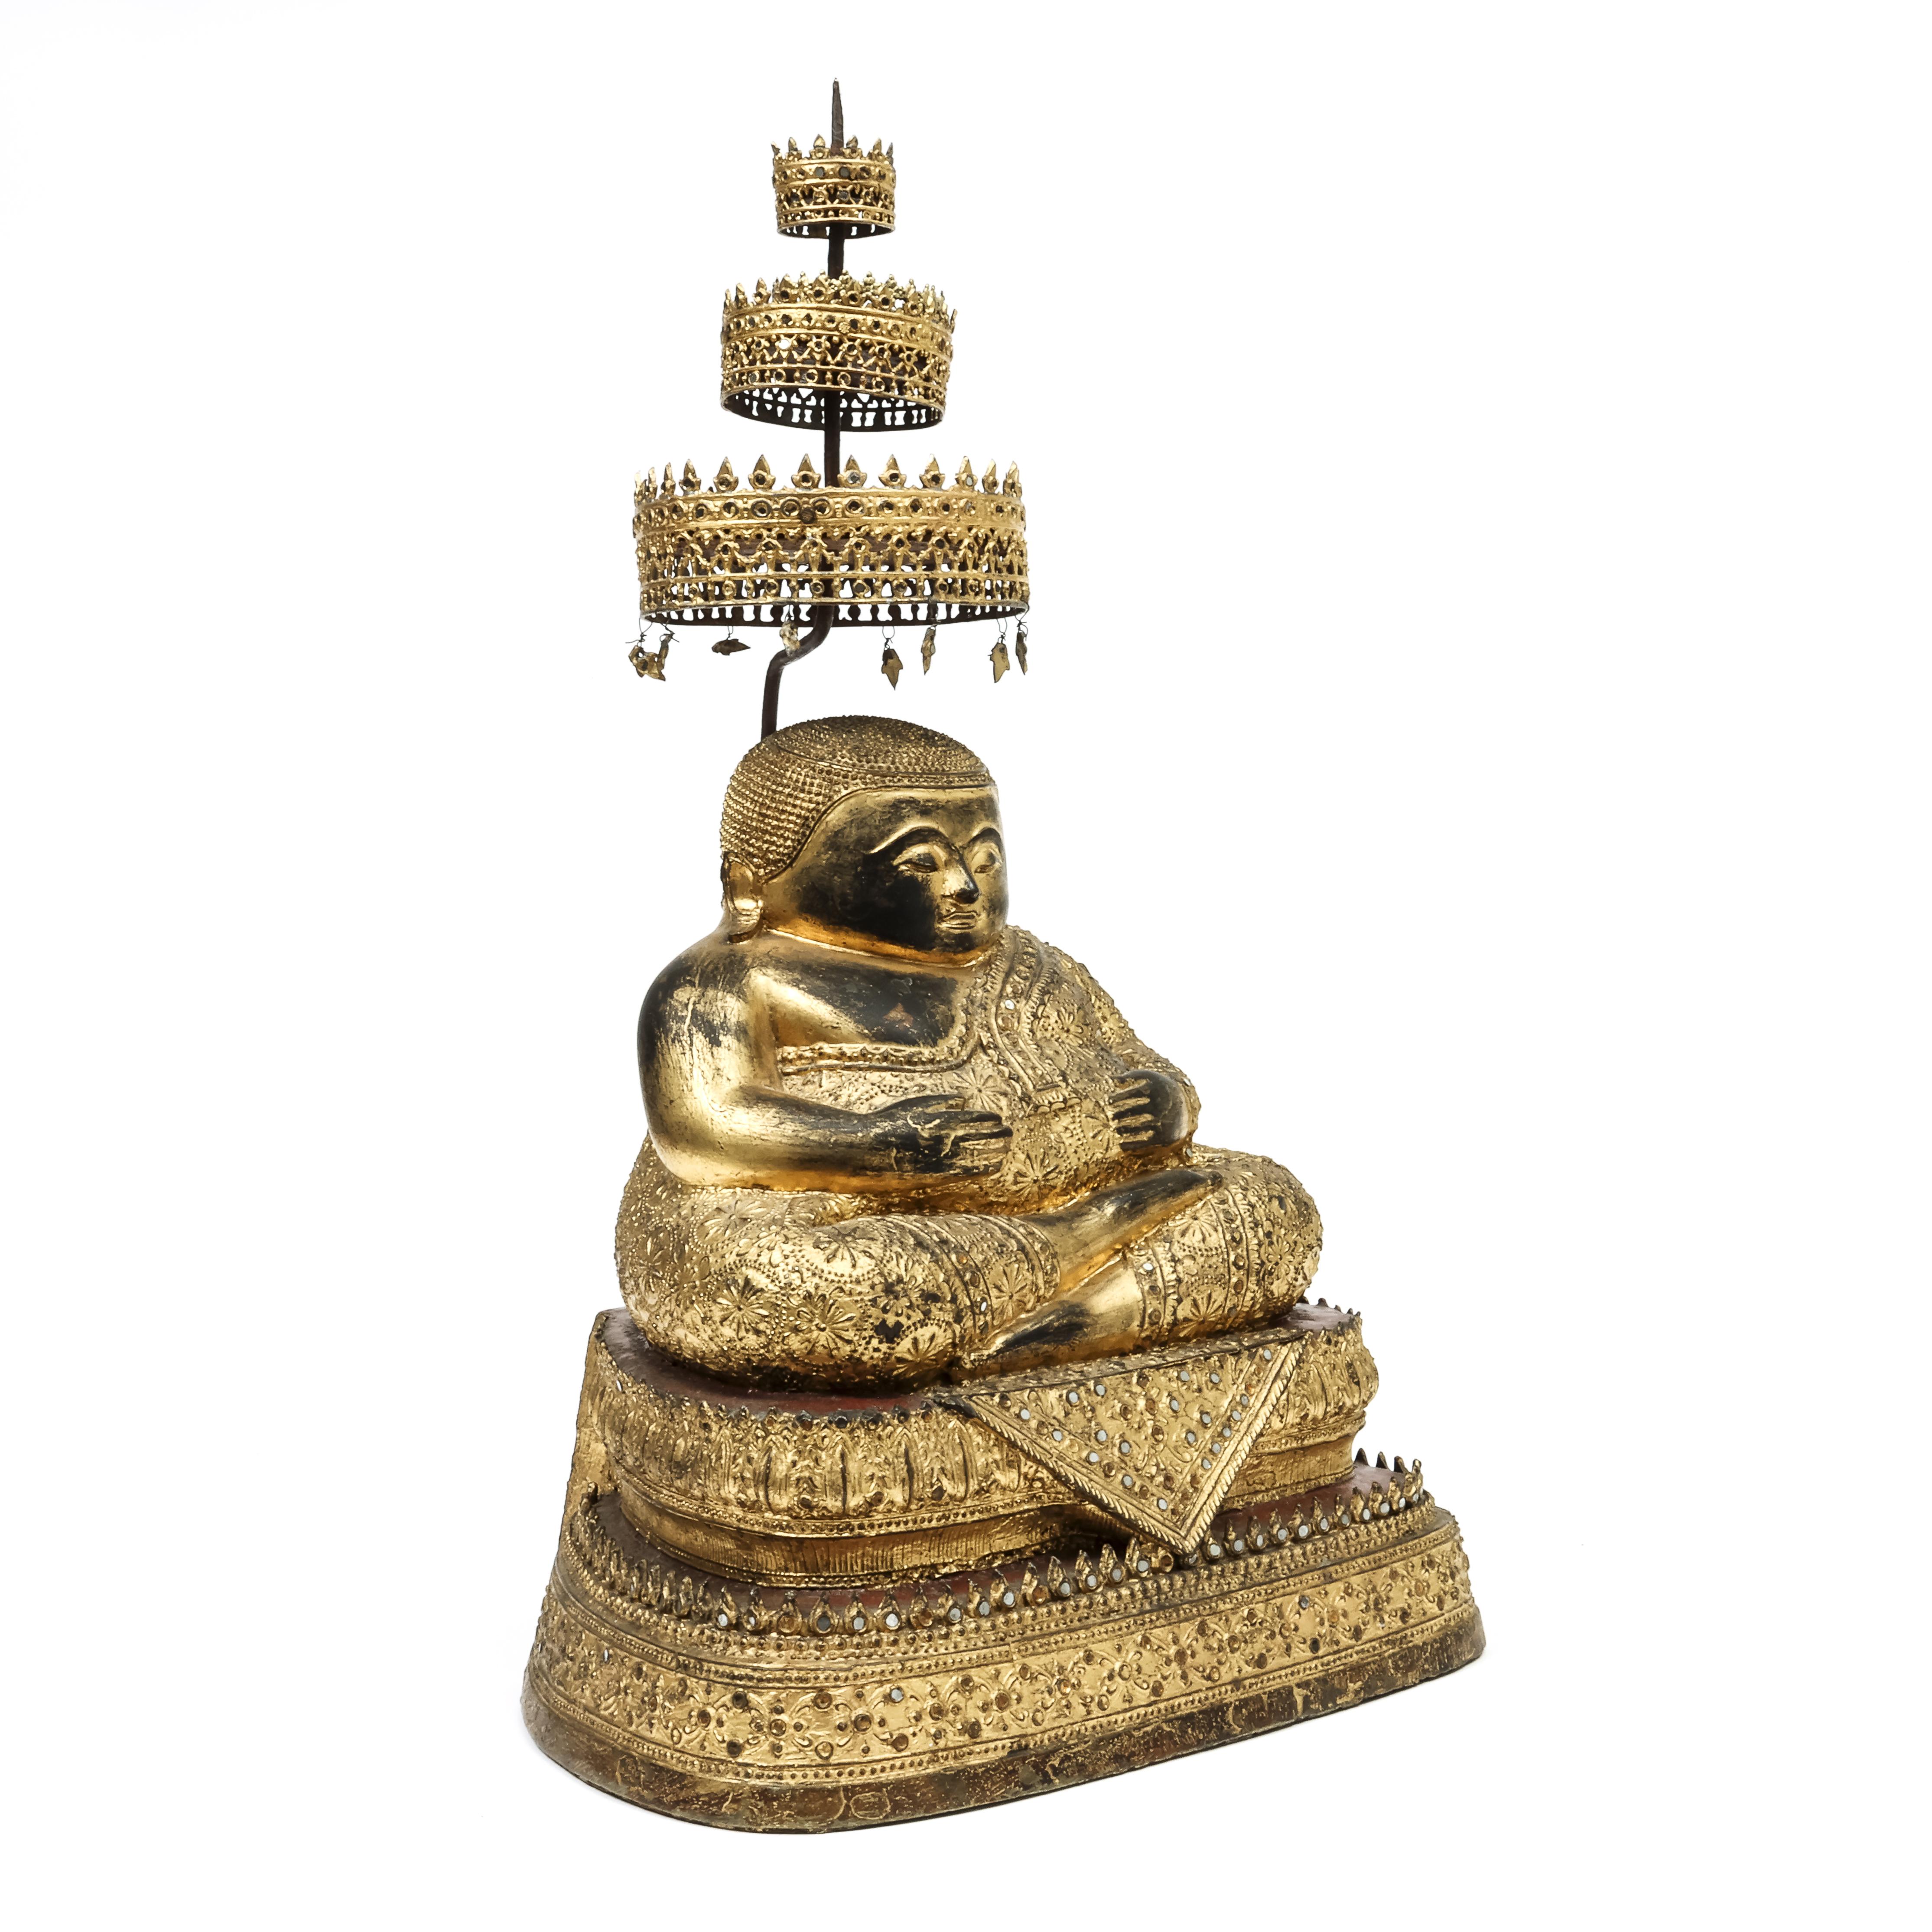 Thailand, a Ratnakosin bronze figure of Sankachai - Mahakatyayana Buddha, 19th century - Image 2 of 4